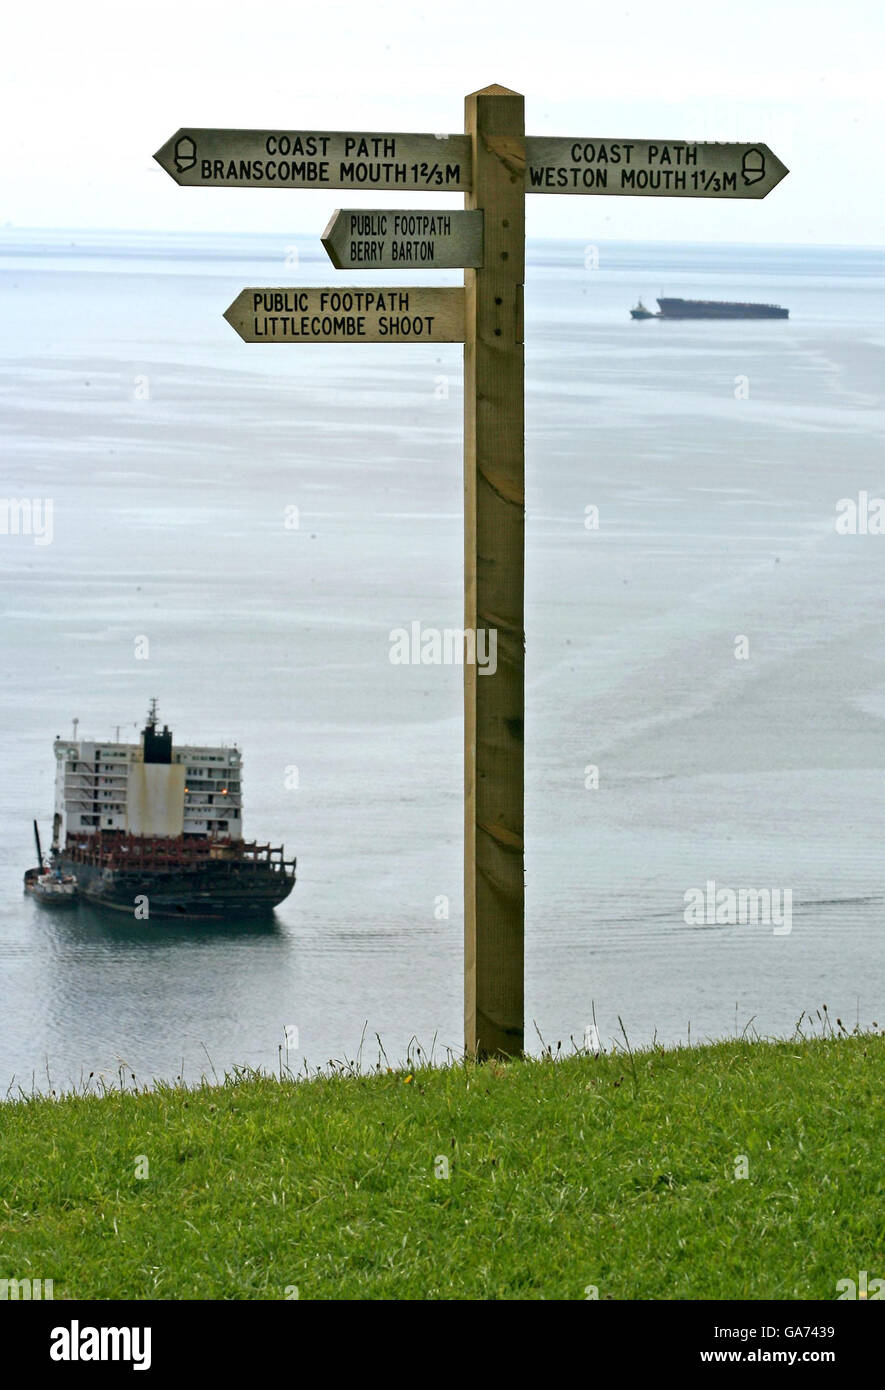 Un remorqueur de garde-côtes commence à remorquer la section de l'arc de la Napoli loin de la poupe restante, à la plage de Branscombe près de Sidmouth, Devon. Banque D'Images